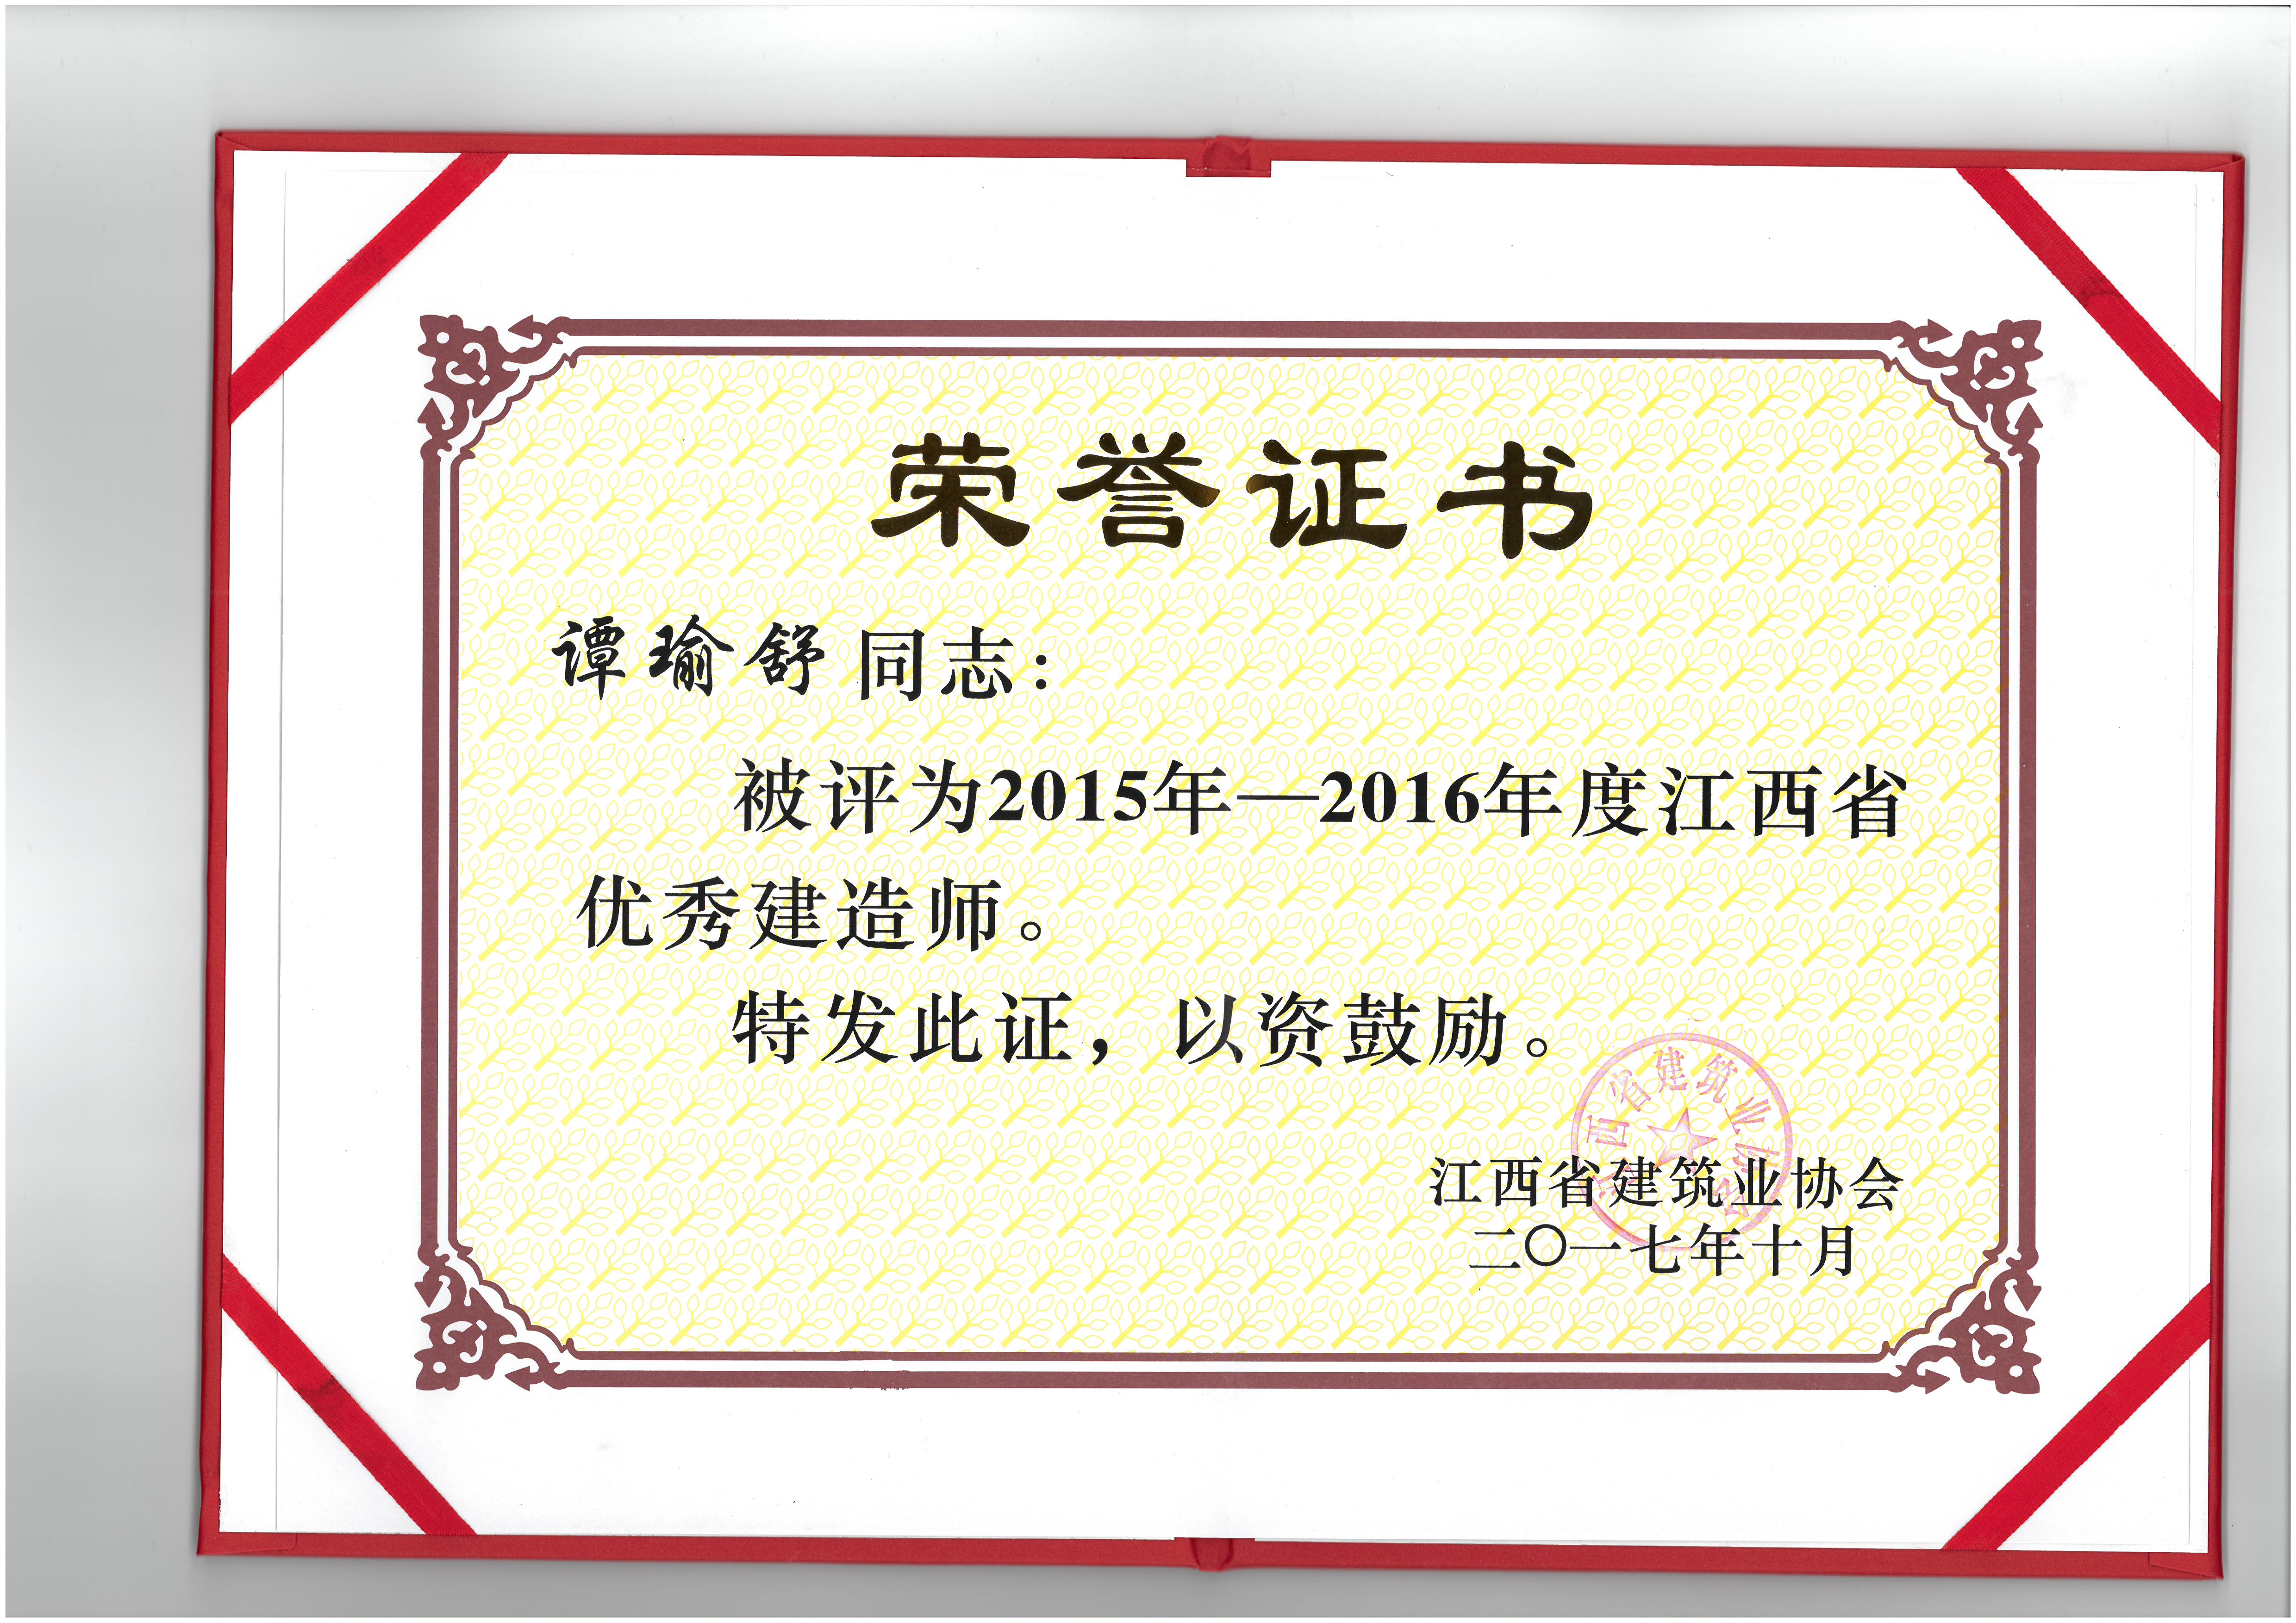 譚瑜舒被授予2015-2016年度“優秀建造師”獎項